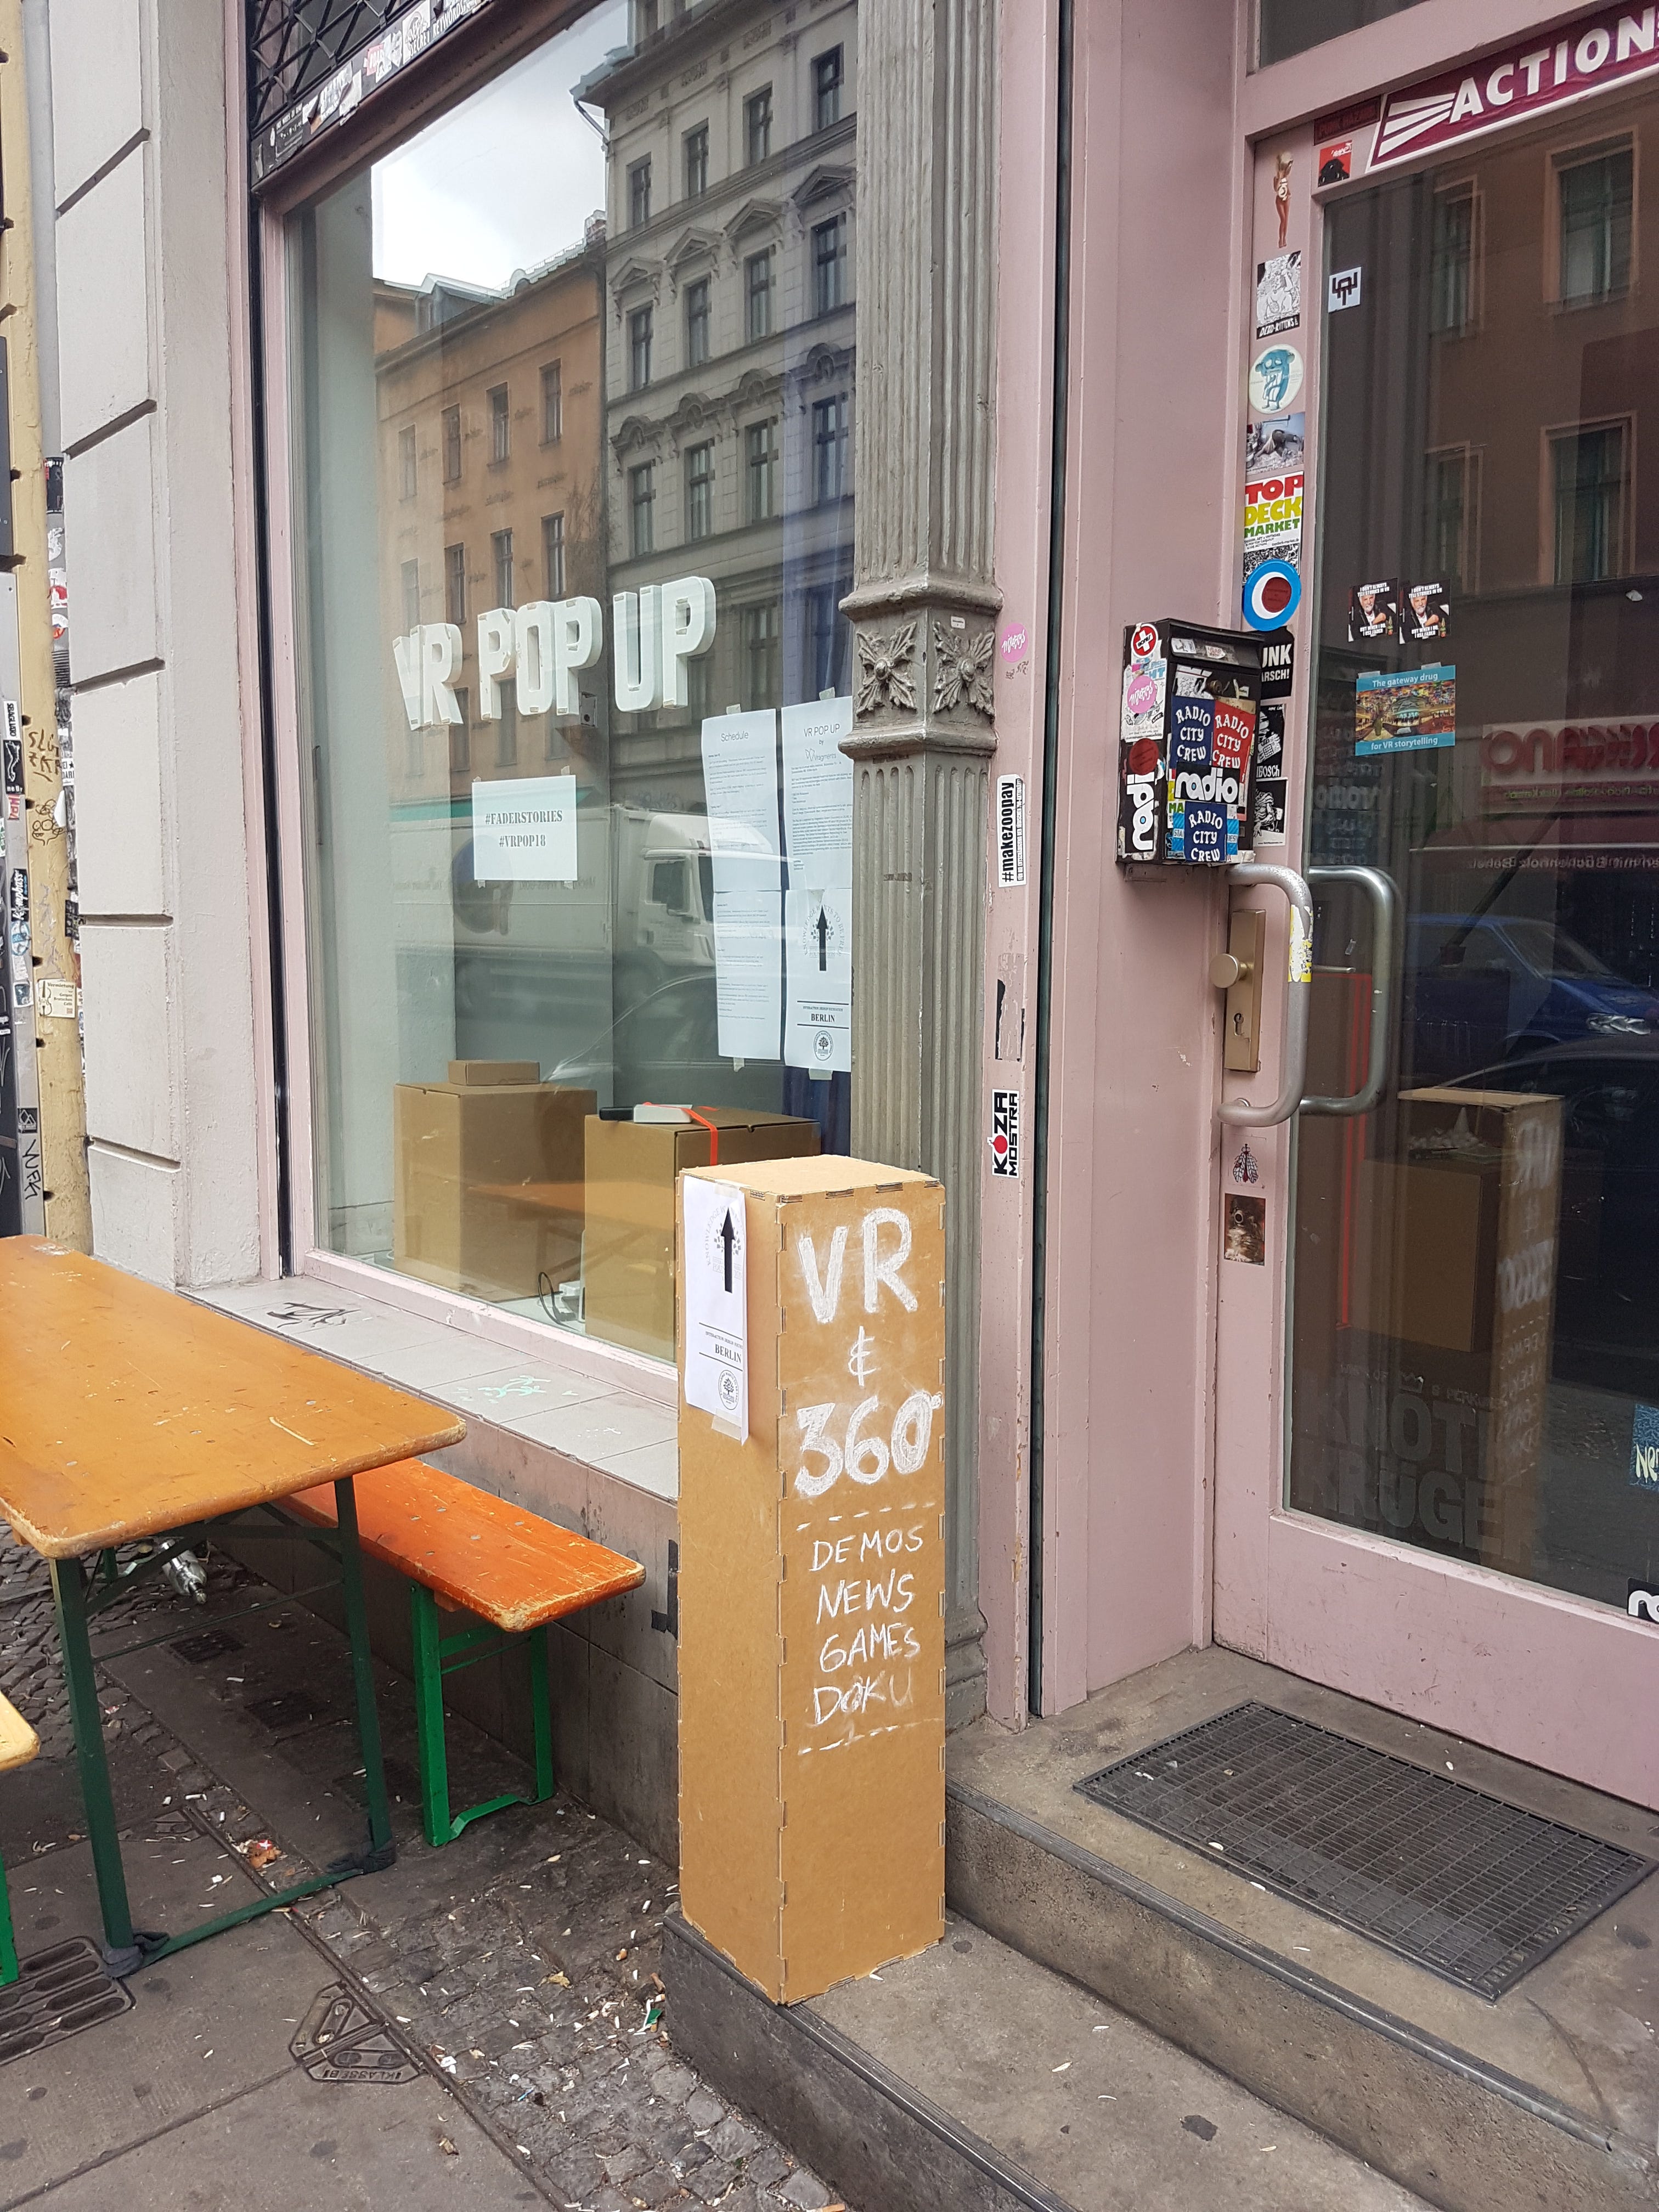 DNIe VR Pop Up Store in Berlin 2018 | by Linda Rath | Medium